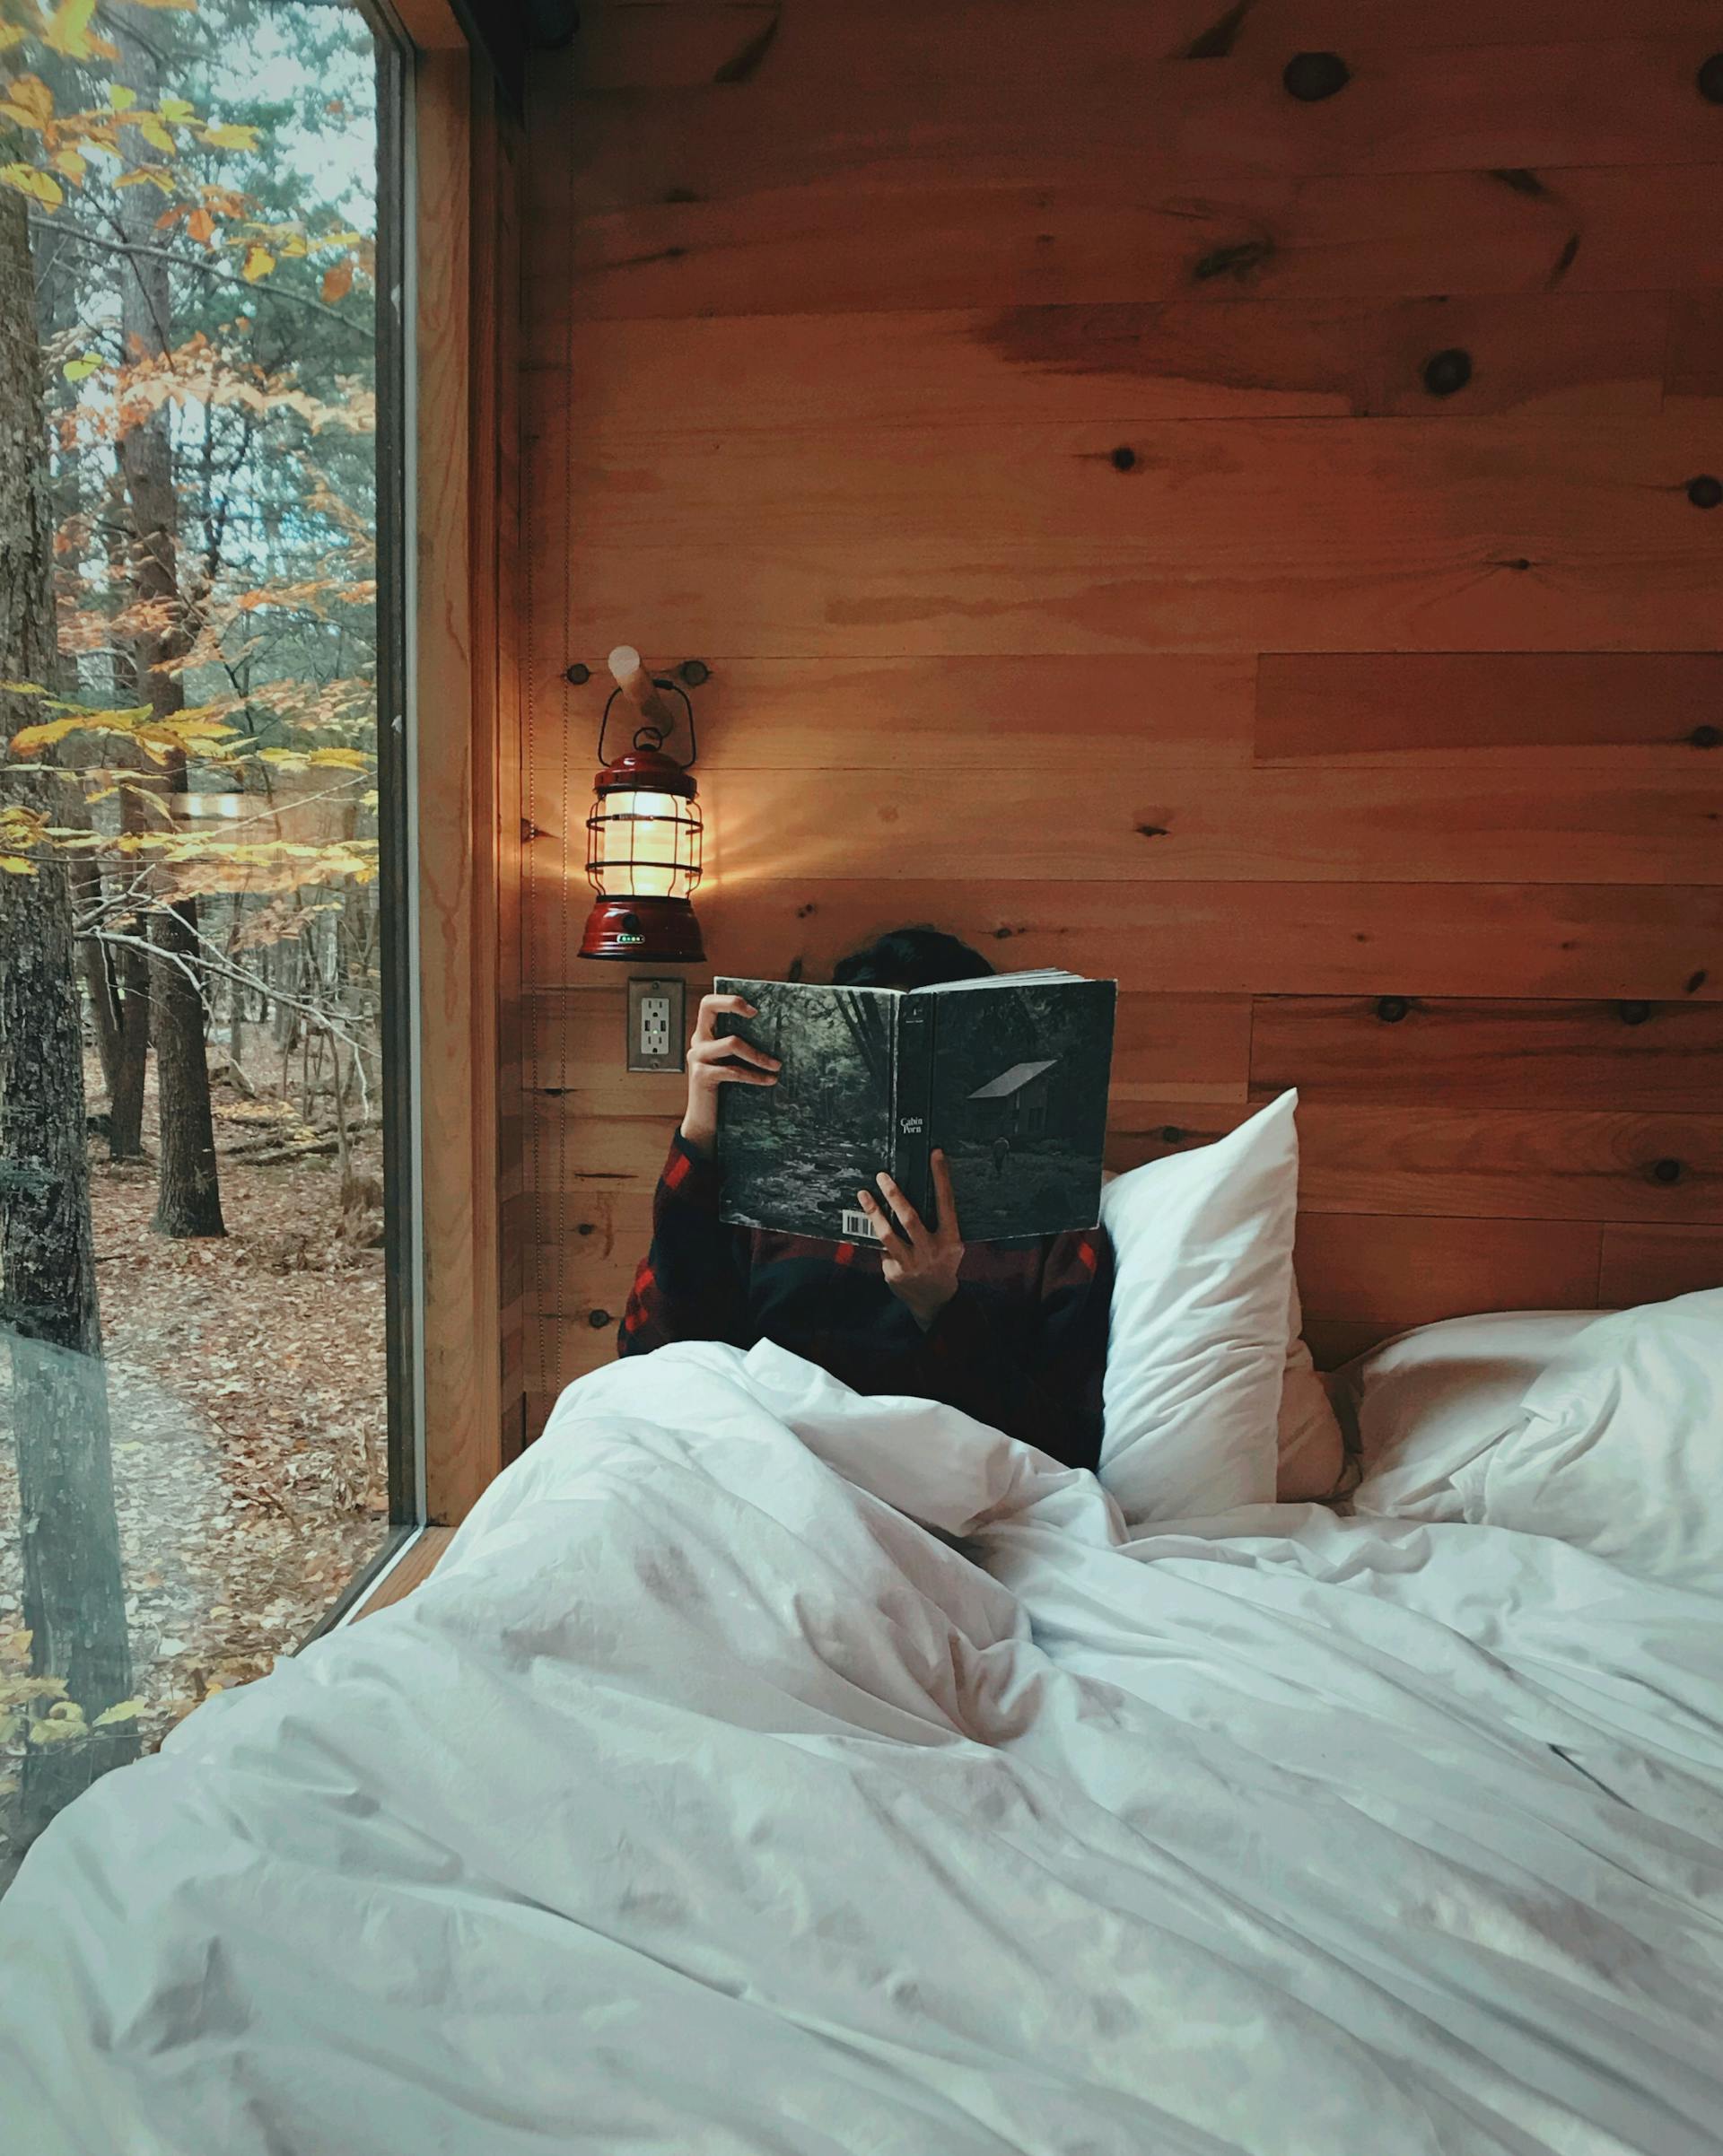 Une personne assise dans son lit dans une cabane | Source : Pexels